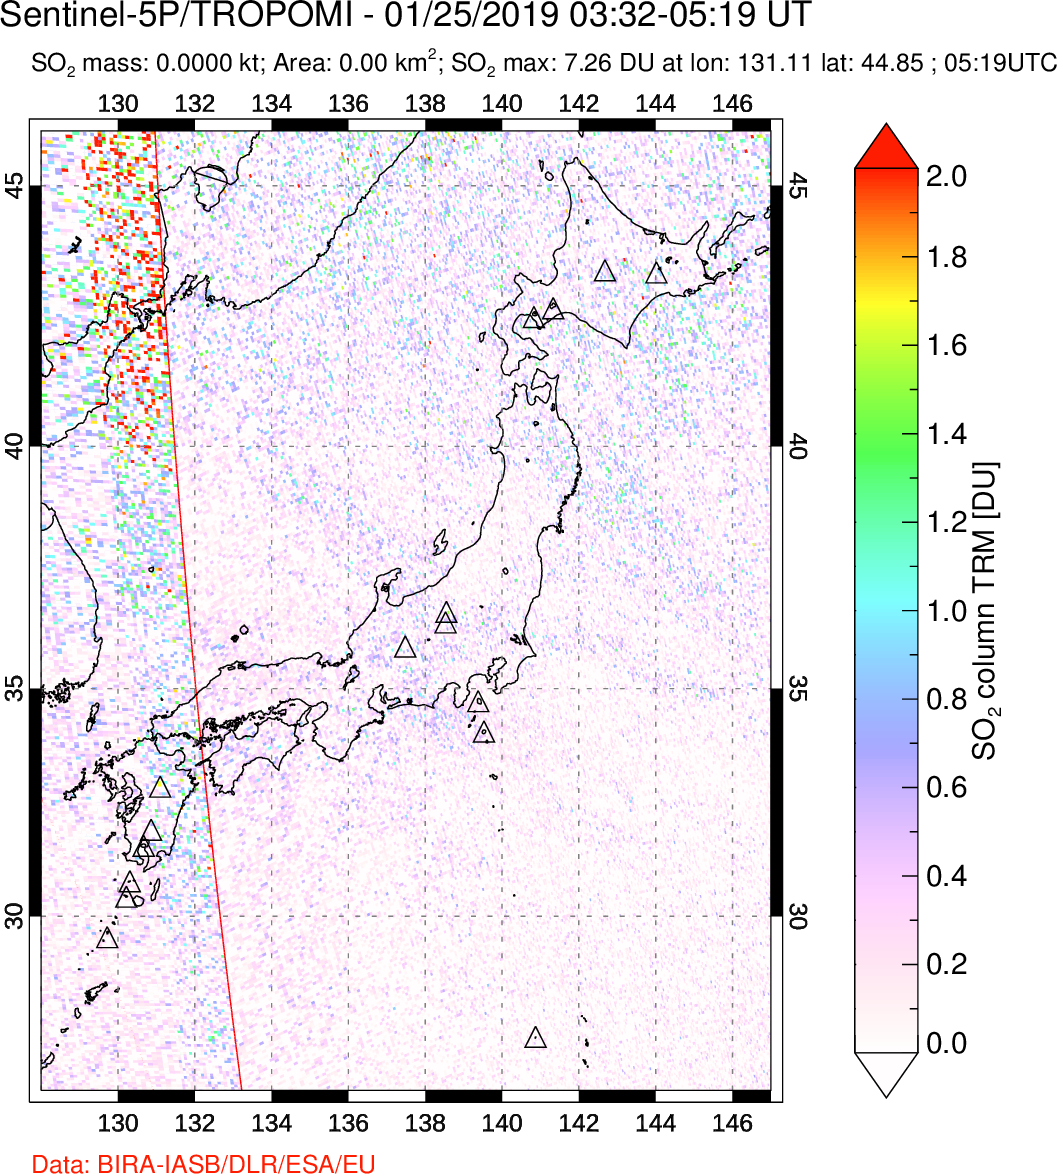 A sulfur dioxide image over Japan on Jan 25, 2019.